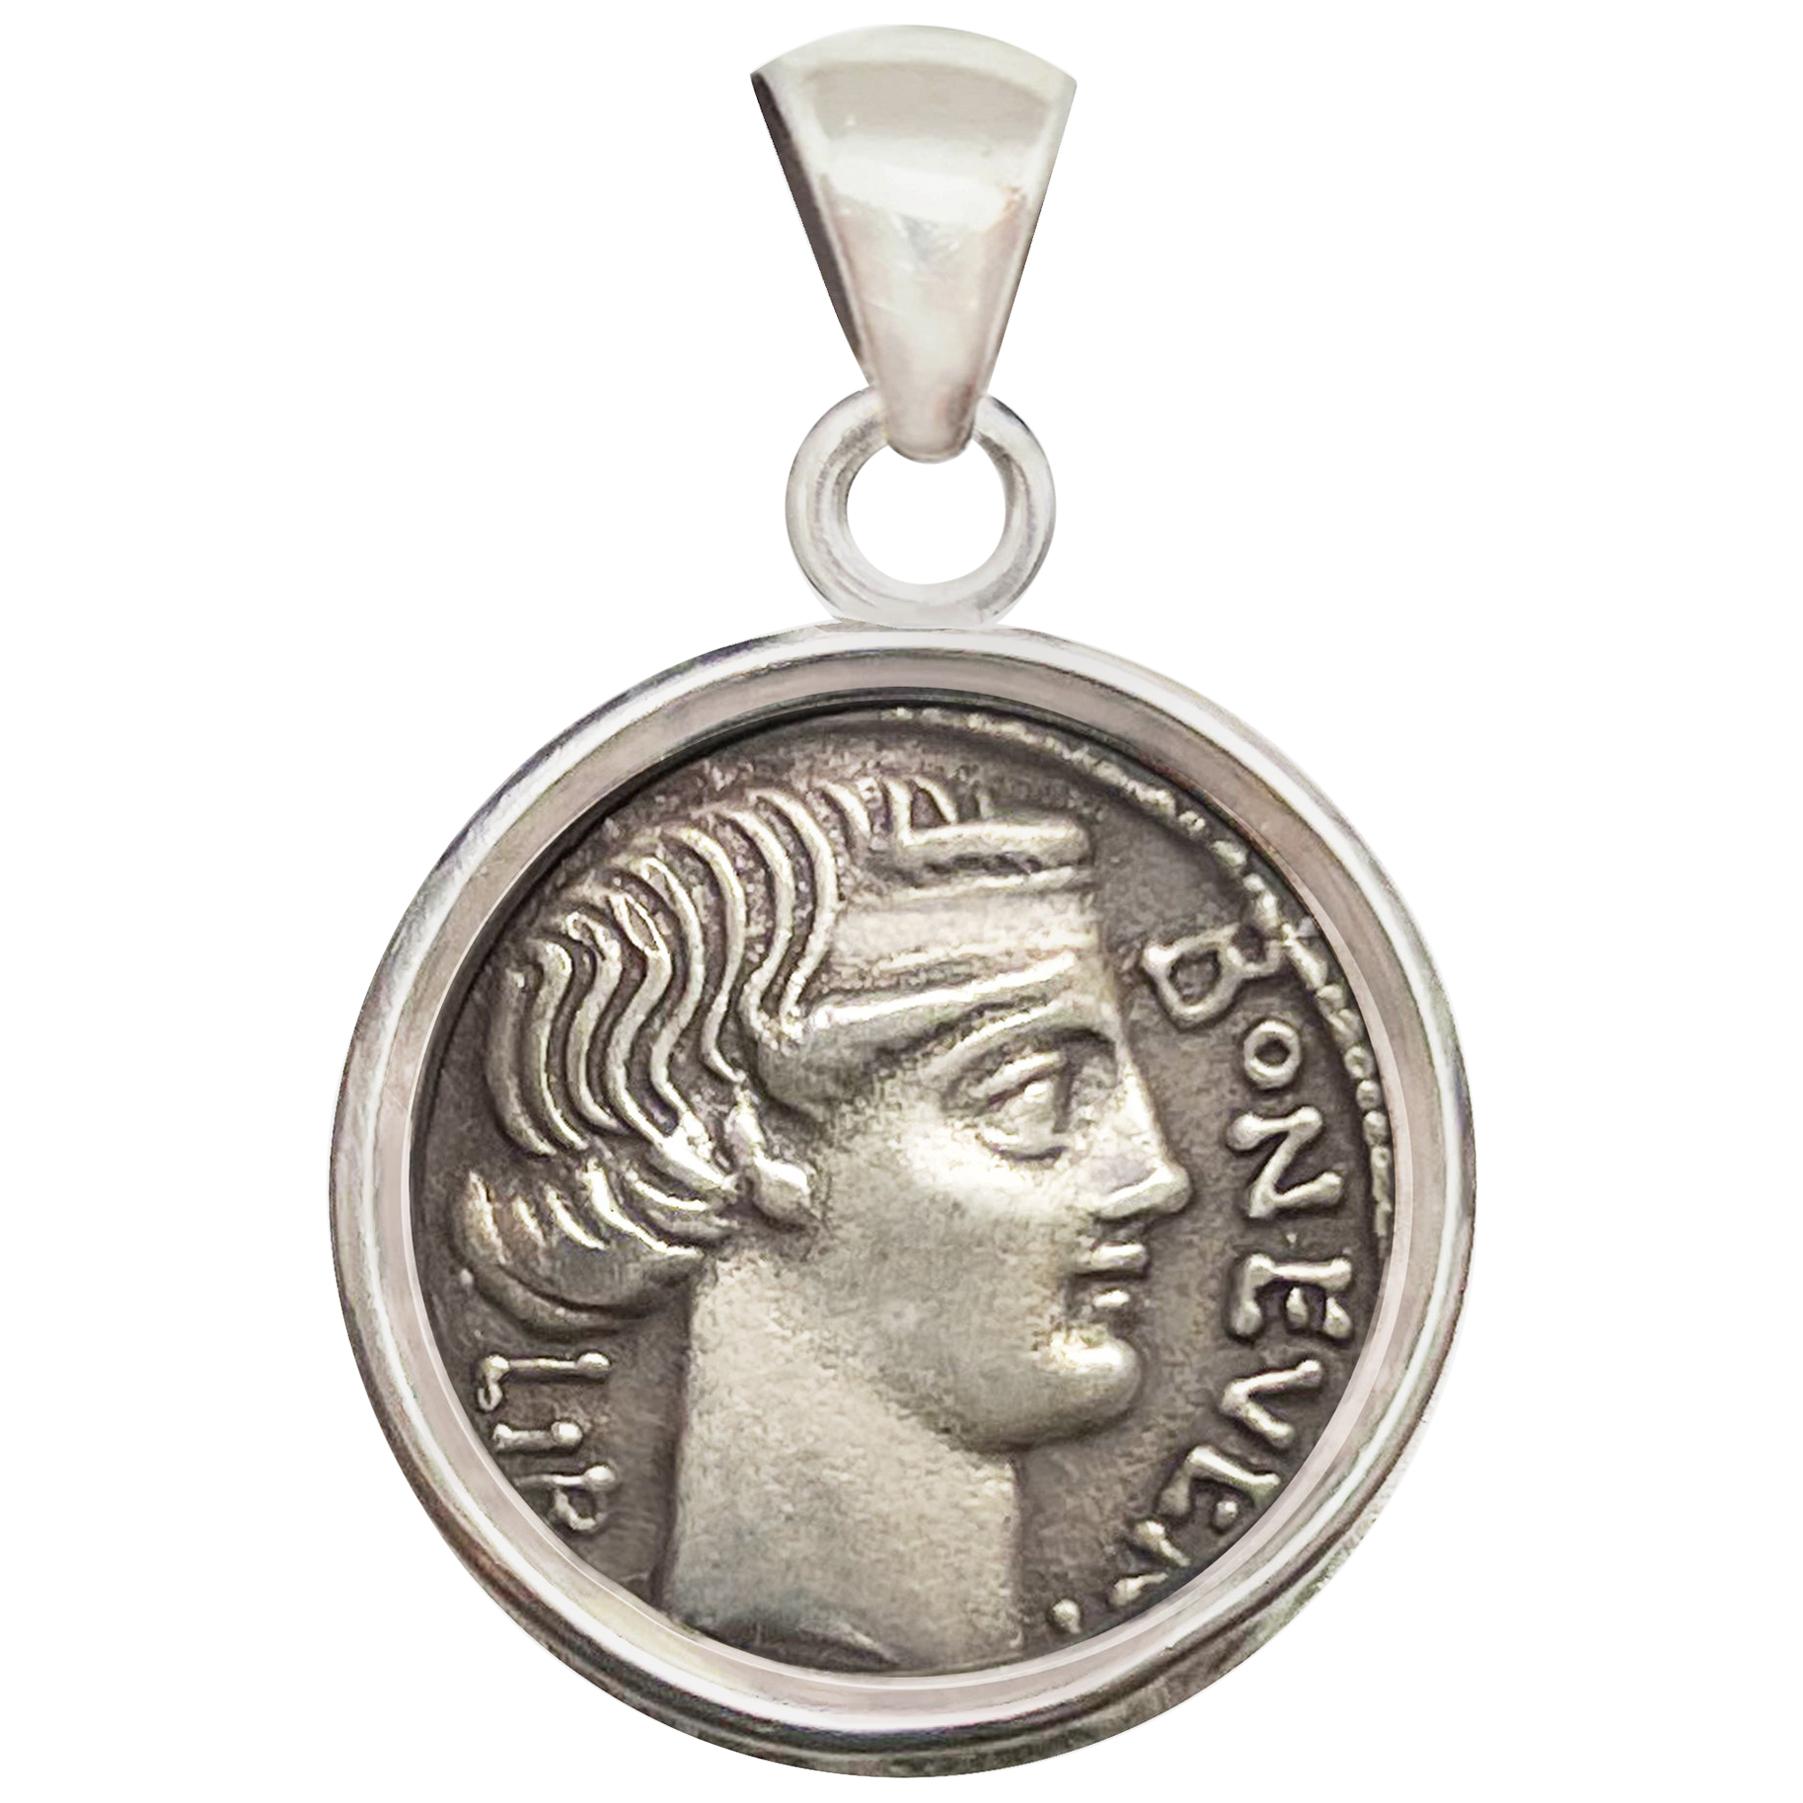 Roman Coin '62 BC' Pendant Depicting a "Bonus Eventus", God of "Good Fortune"